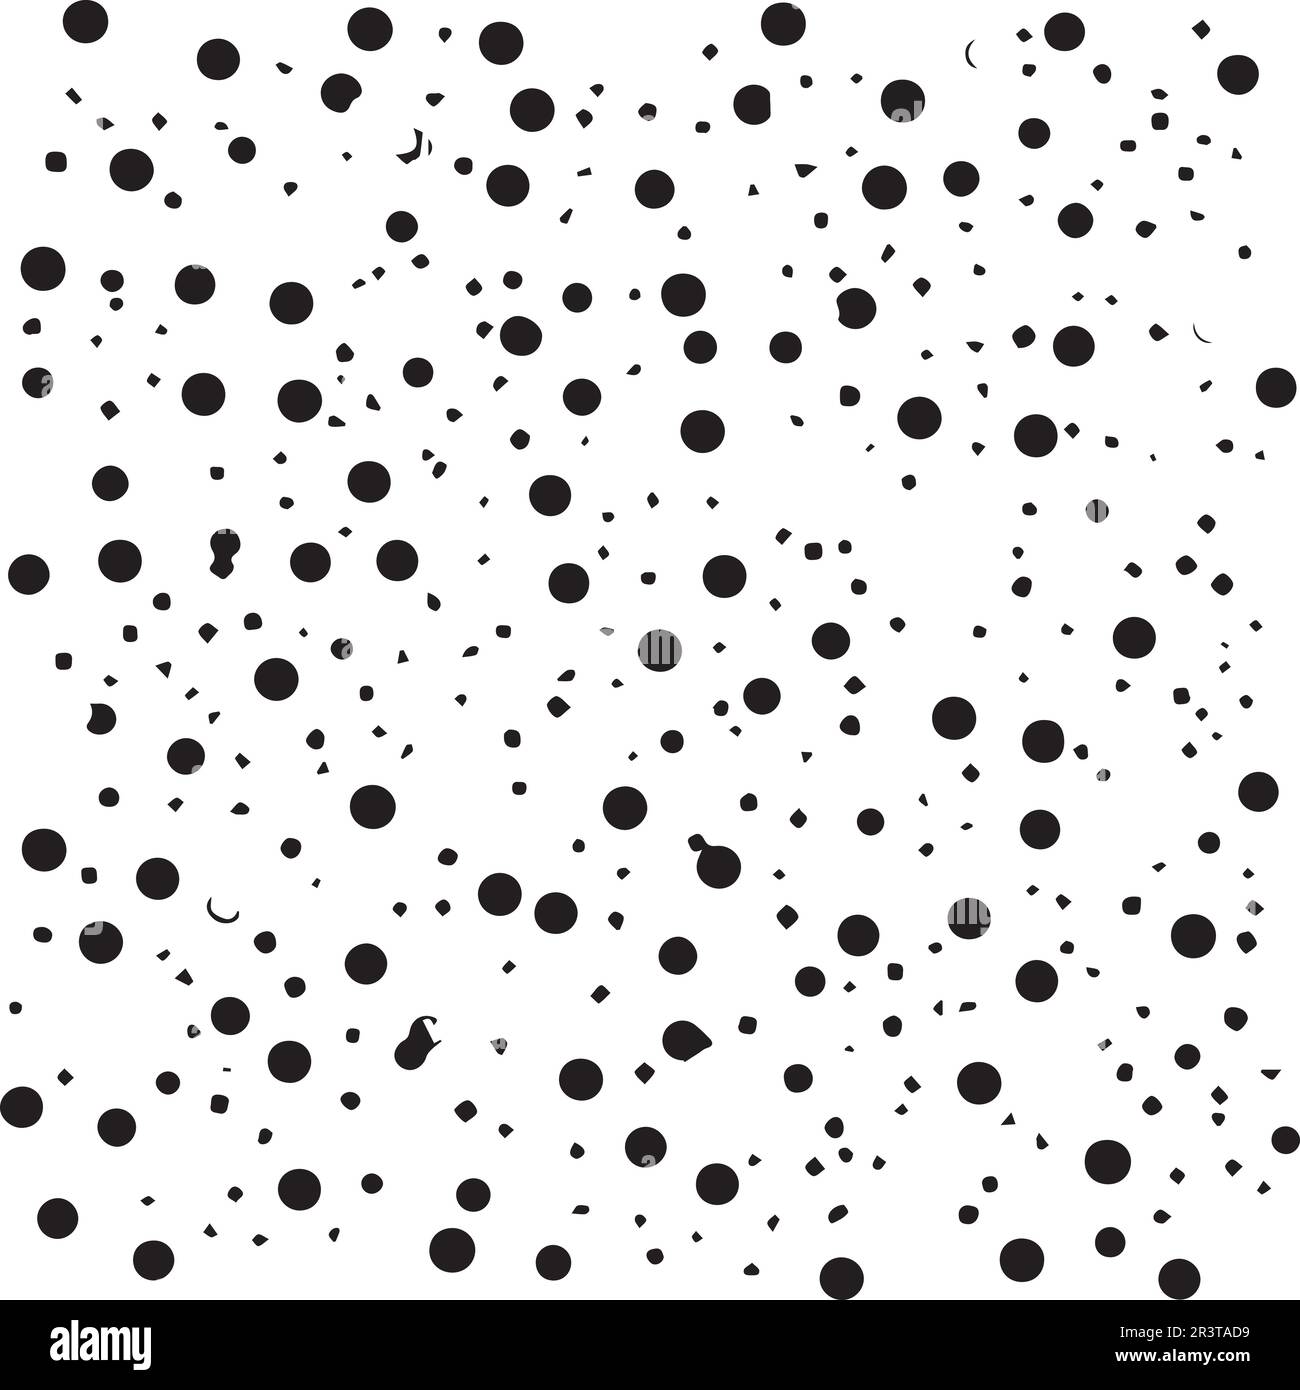 Ein Muster mit Kreisen und Punkten, die schwarz-weiß sind Stock Vektor